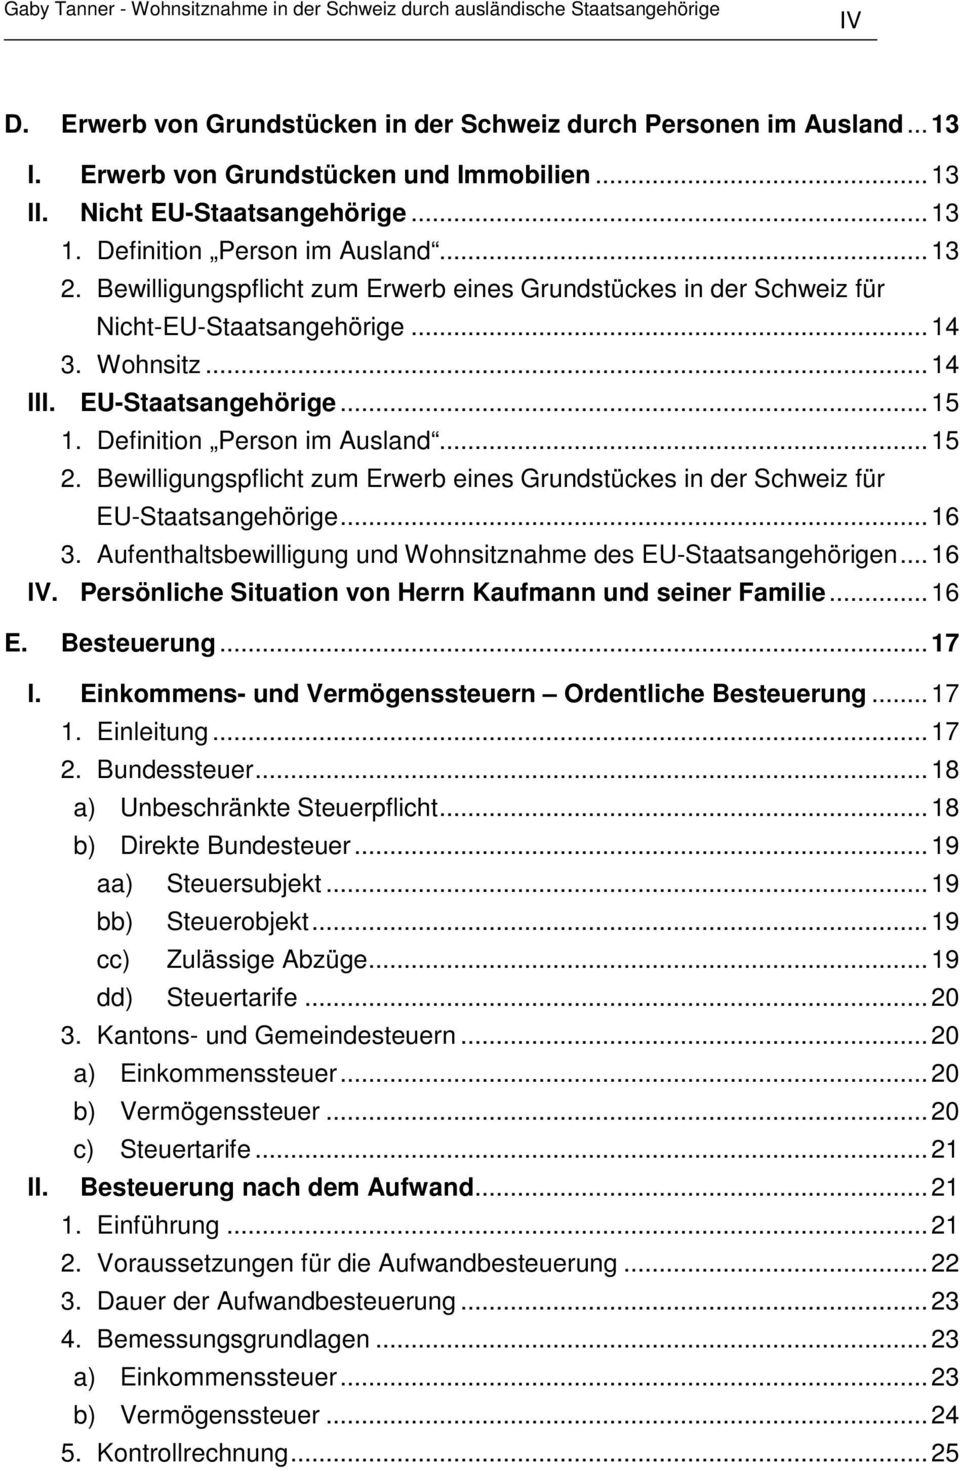 Bewilligungspflicht zum Erwerb eines Grundstückes in der Schweiz für EU-Staatsangehörige...16 3. Aufenthaltsbewilligung und Wohnsitznahme des EU-Staatsangehörigen...16 IV.